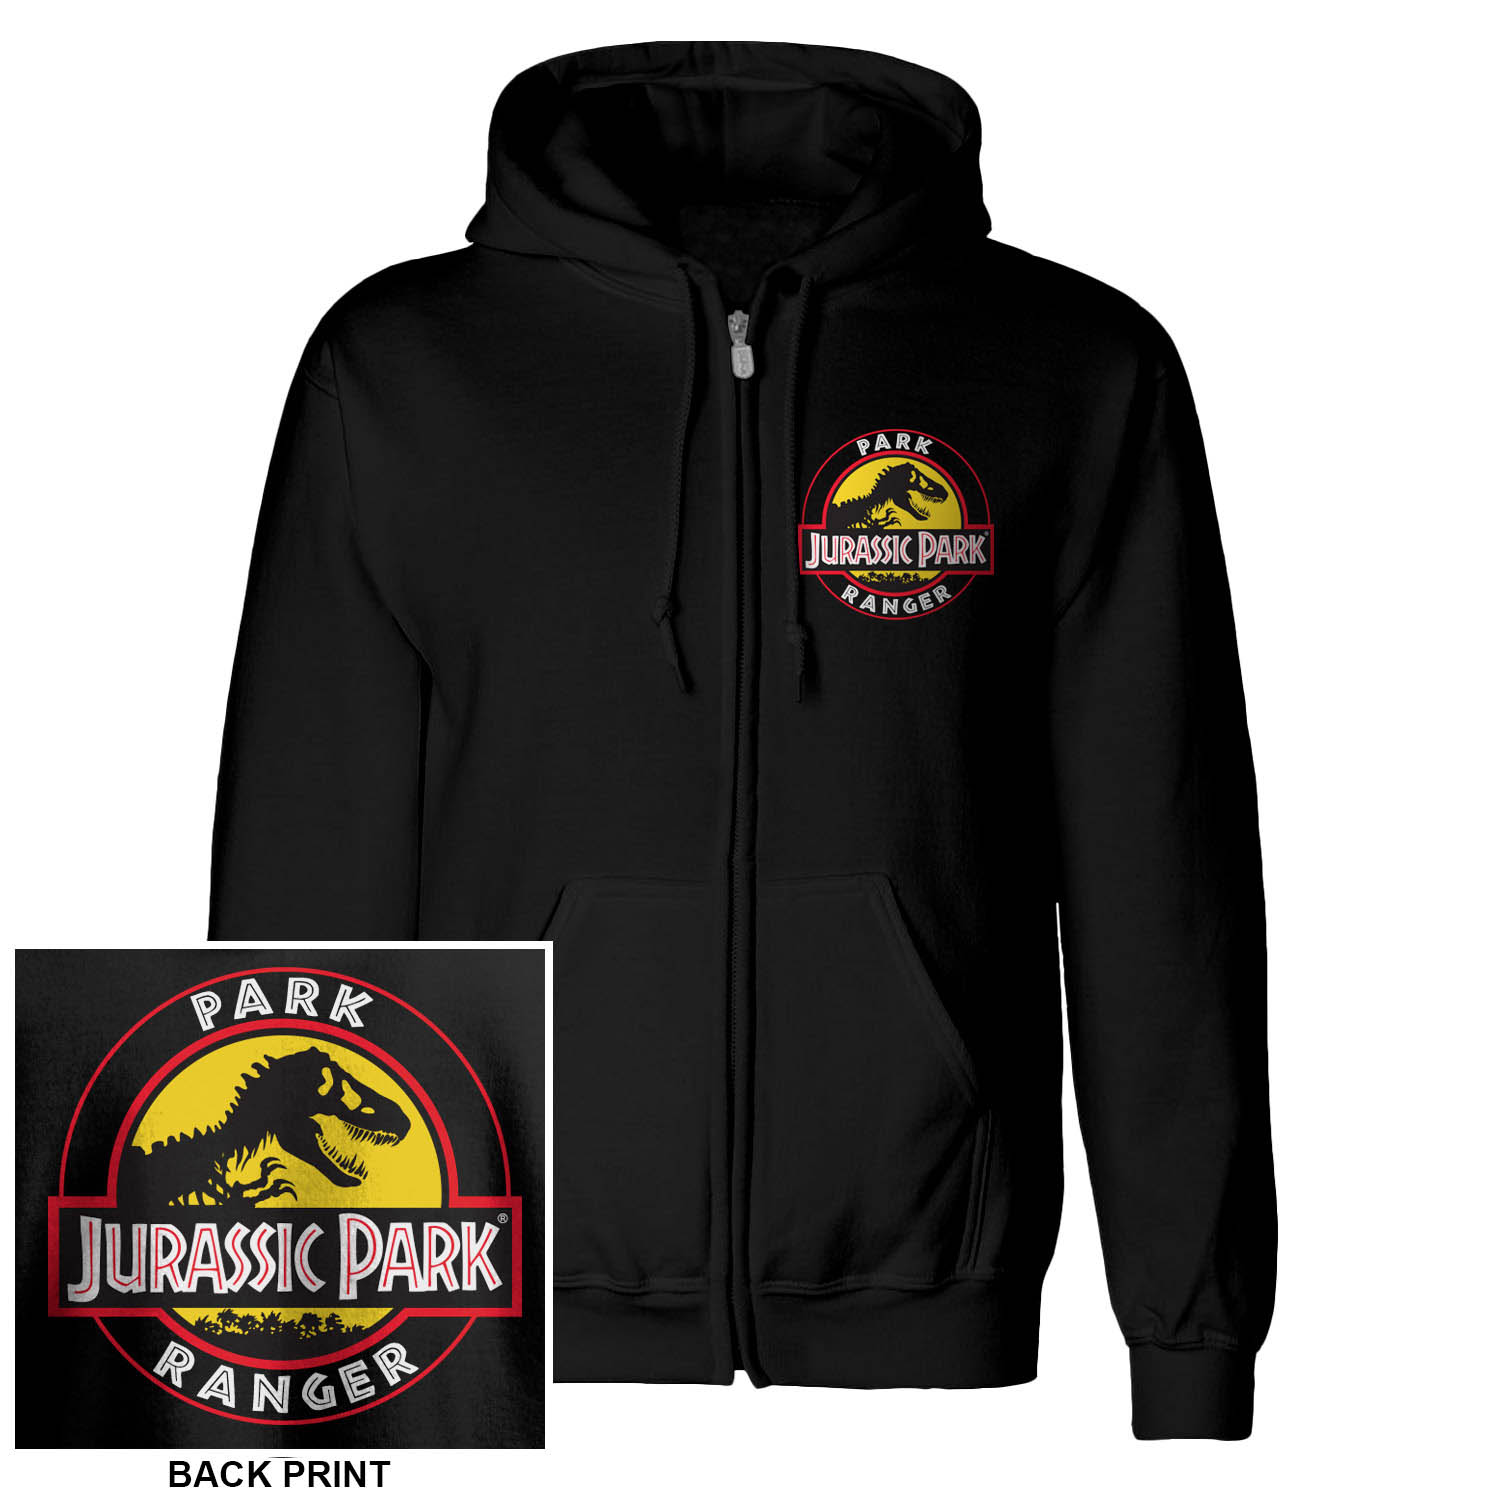 Abbigliamento Jurassic Park: Park Ranger (Zip-Up) (Felpa Con Cappuccio Unisex Tg. XL) NUOVO SIGILLATO, EDIZIONE DEL 19/07/2021 SUBITO DISPONIBILE